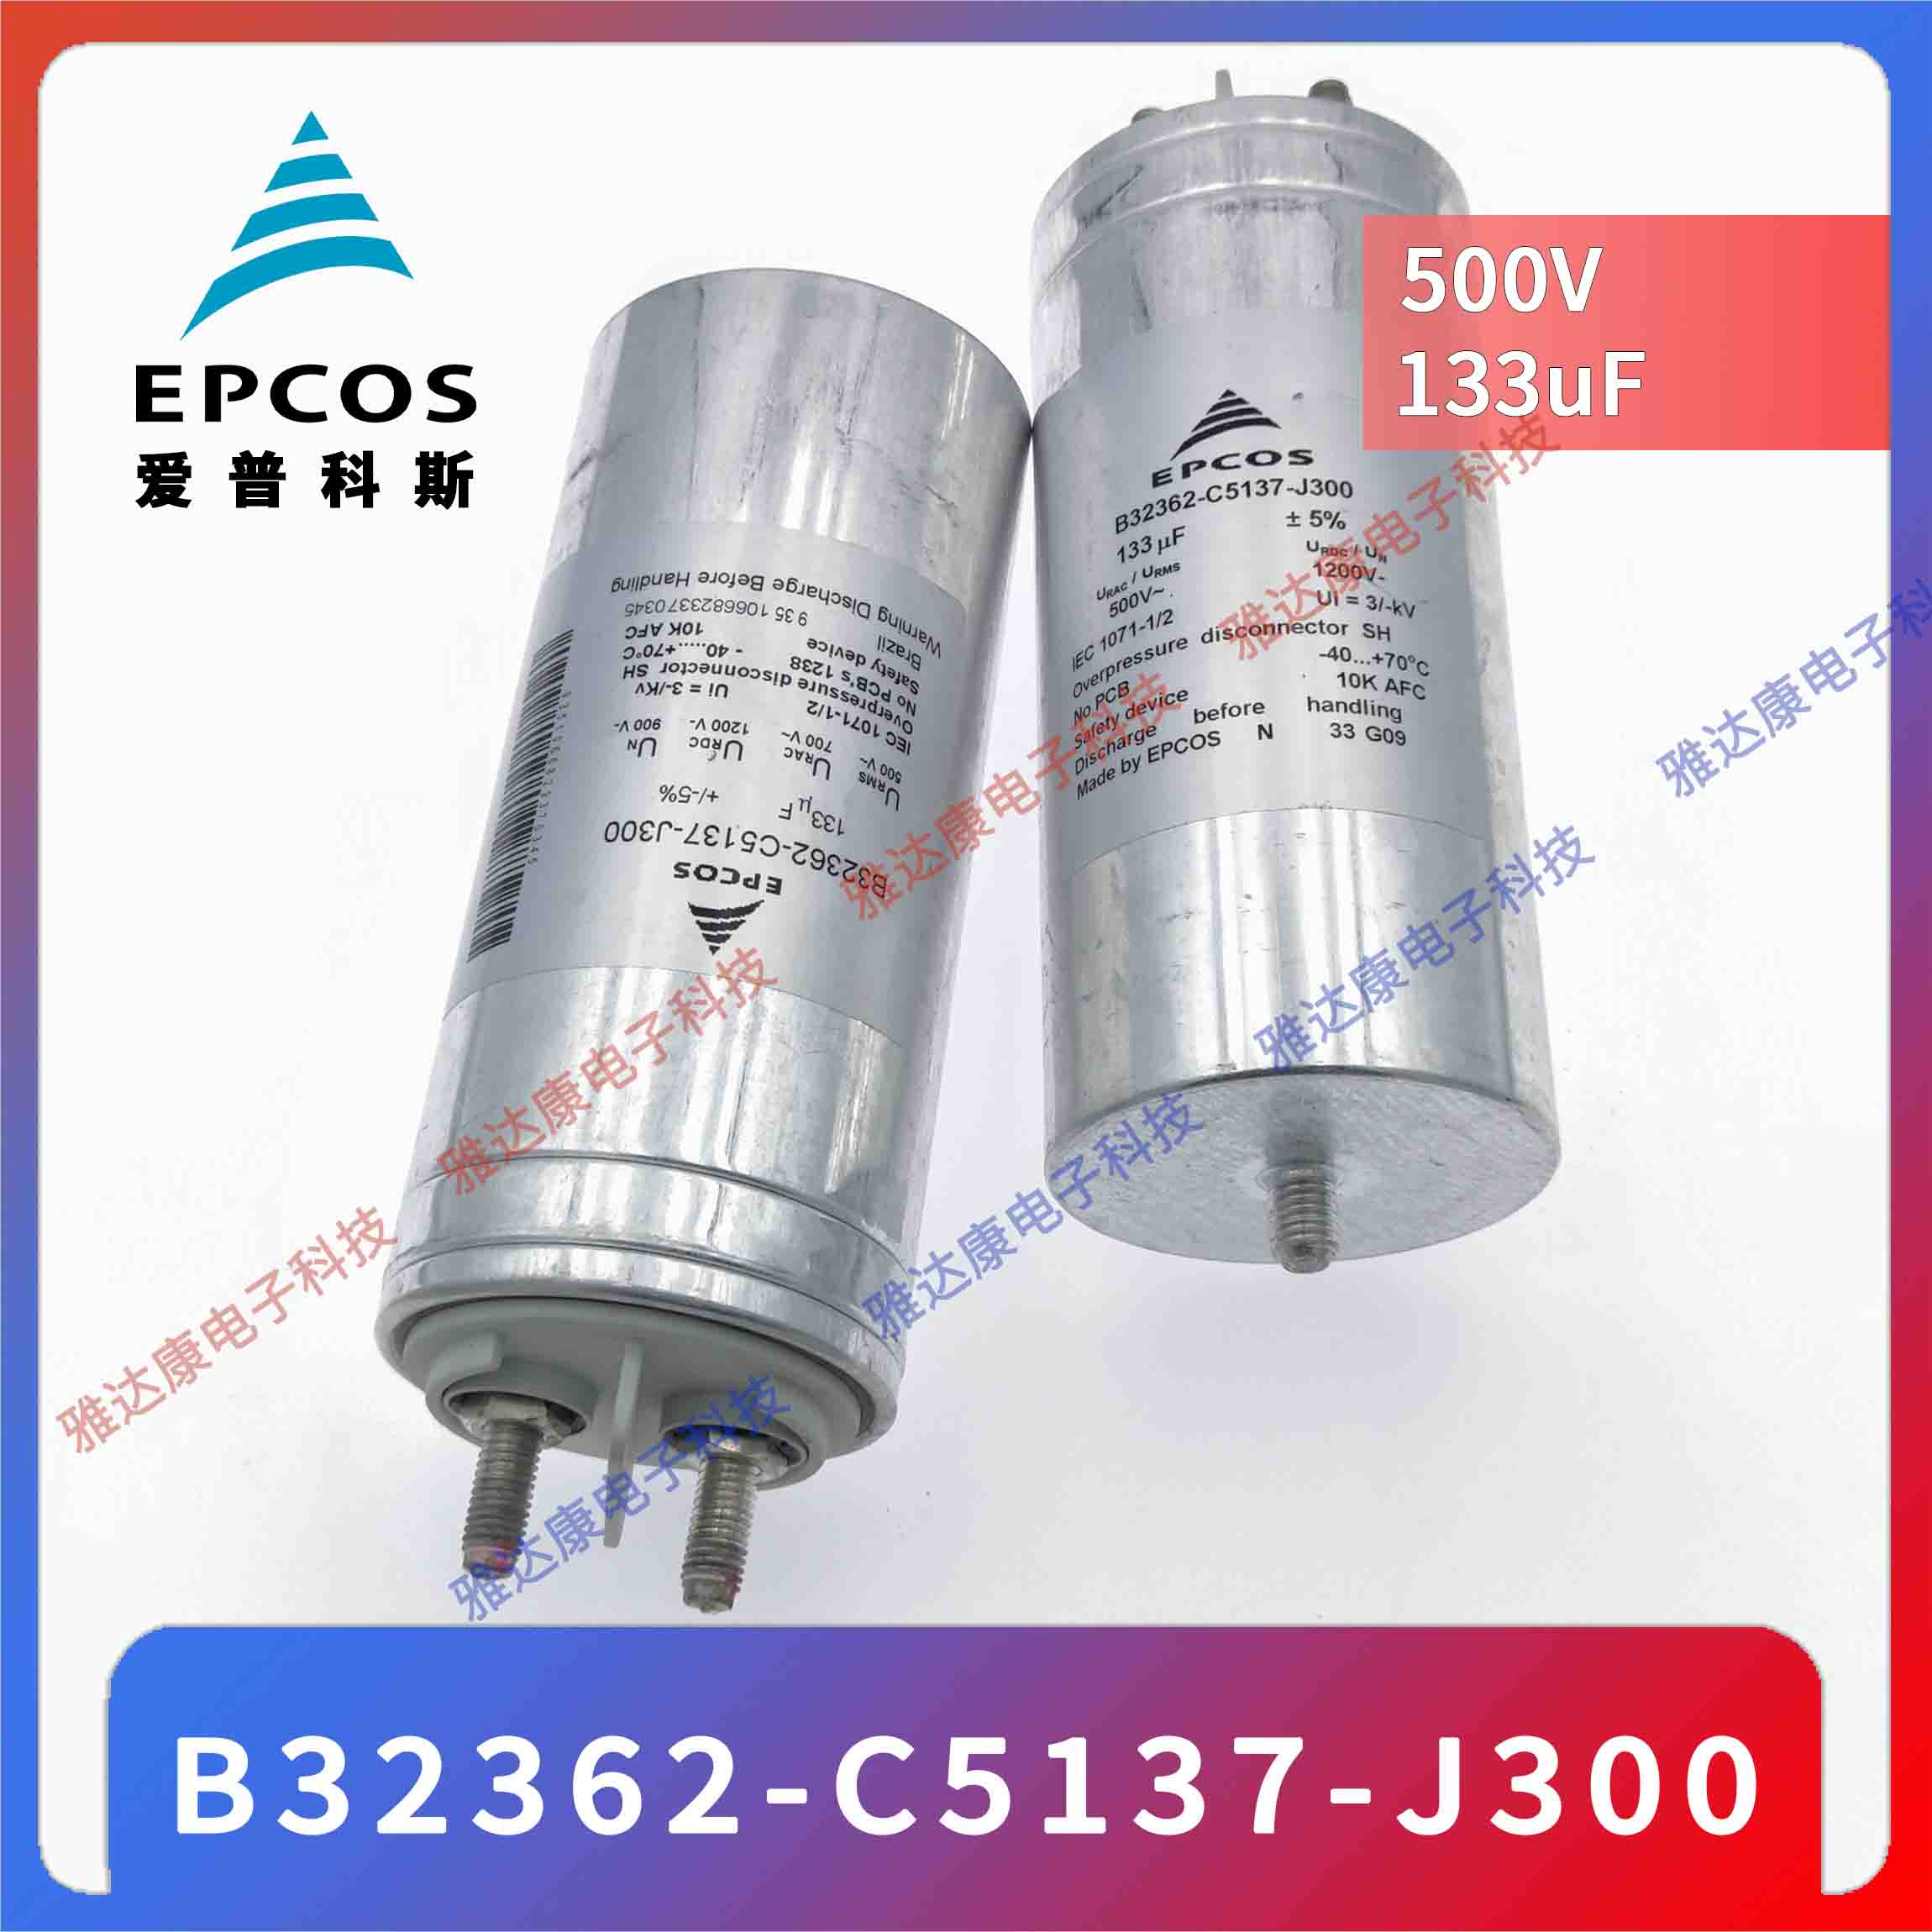 EPCOS电容器MKK690-D-12.5-01 B25667C6836A375电容 品牌